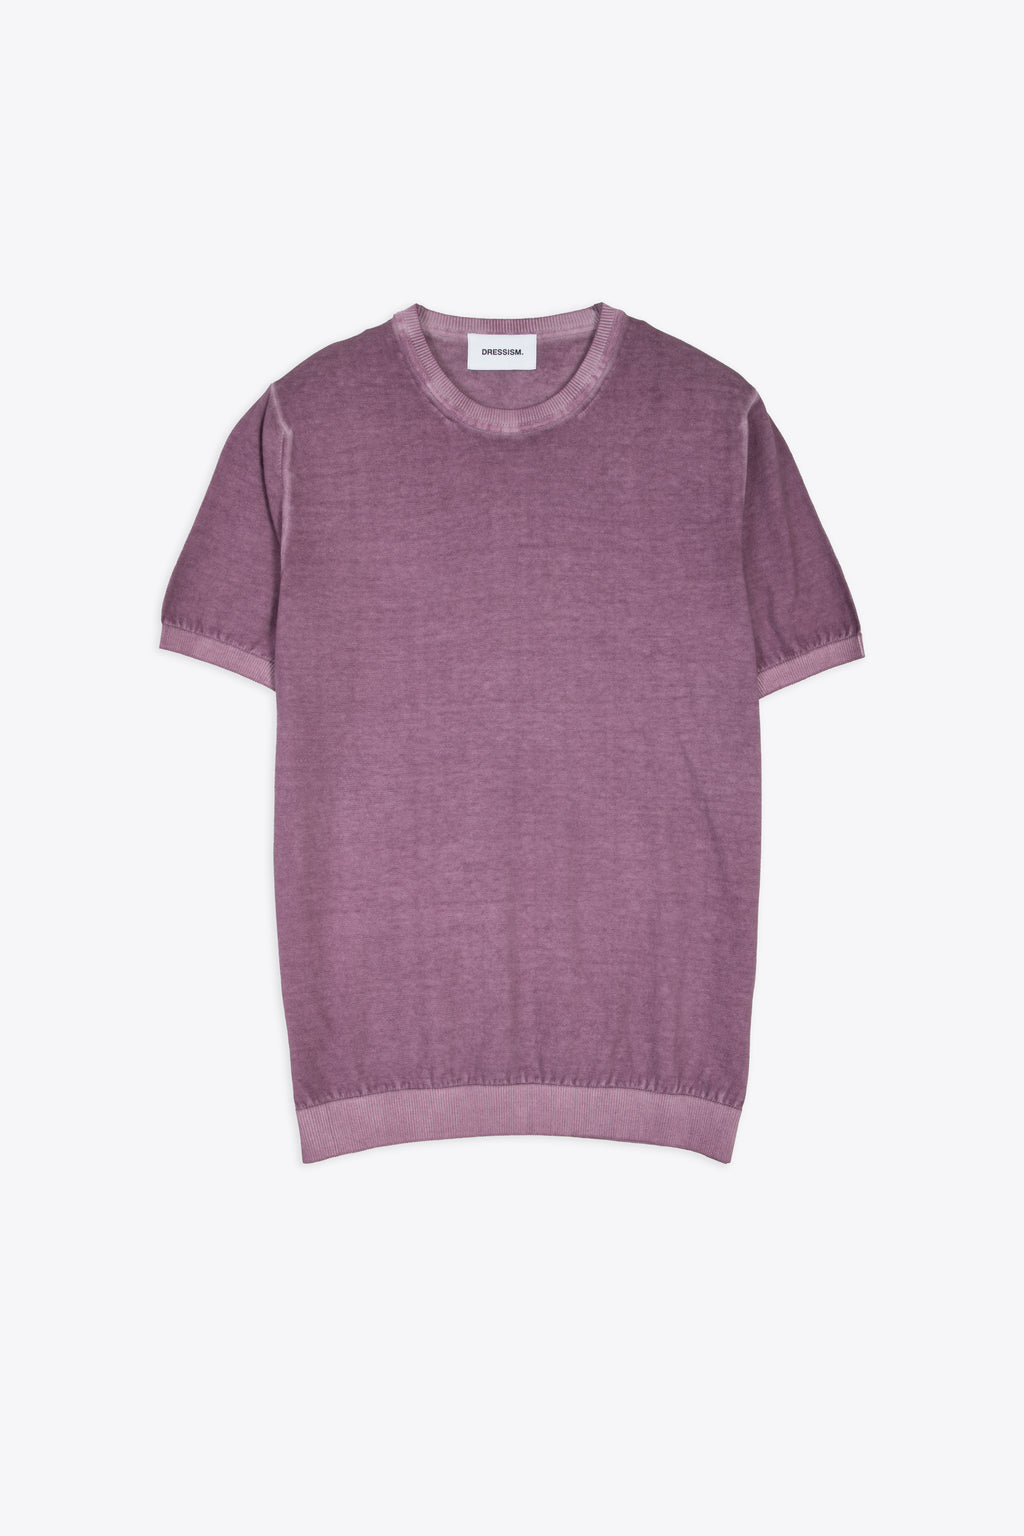 alt-image__T-shirt-in-filo-di-cotone-viola-lavato